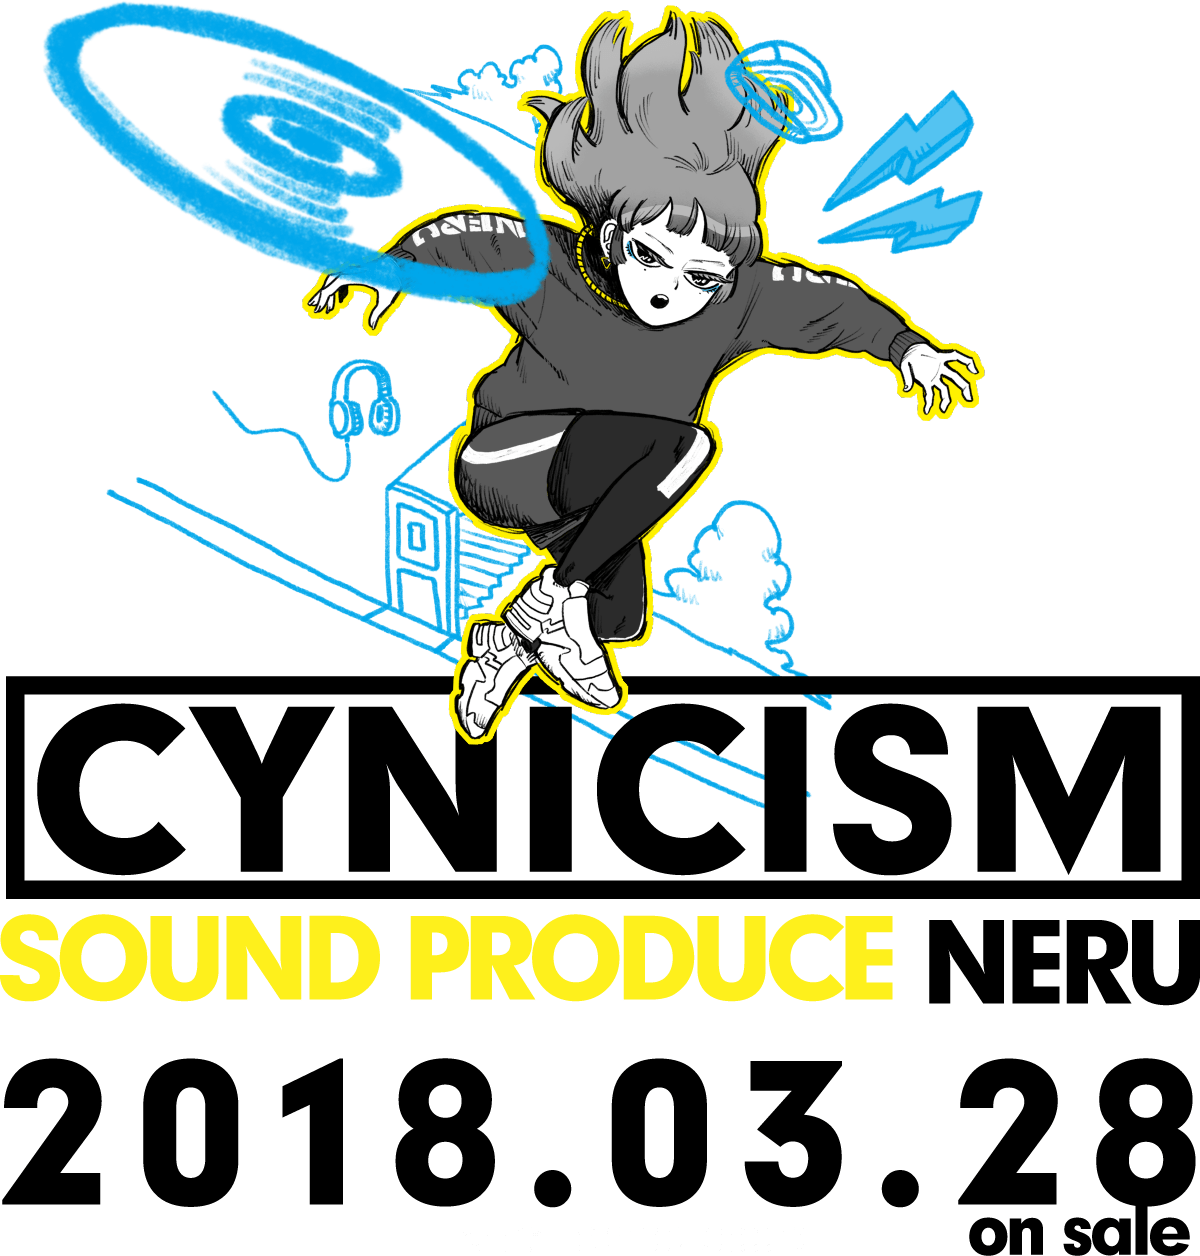 CYNICISM SOUND PRODUCE NERU 2018.03.28 on sale